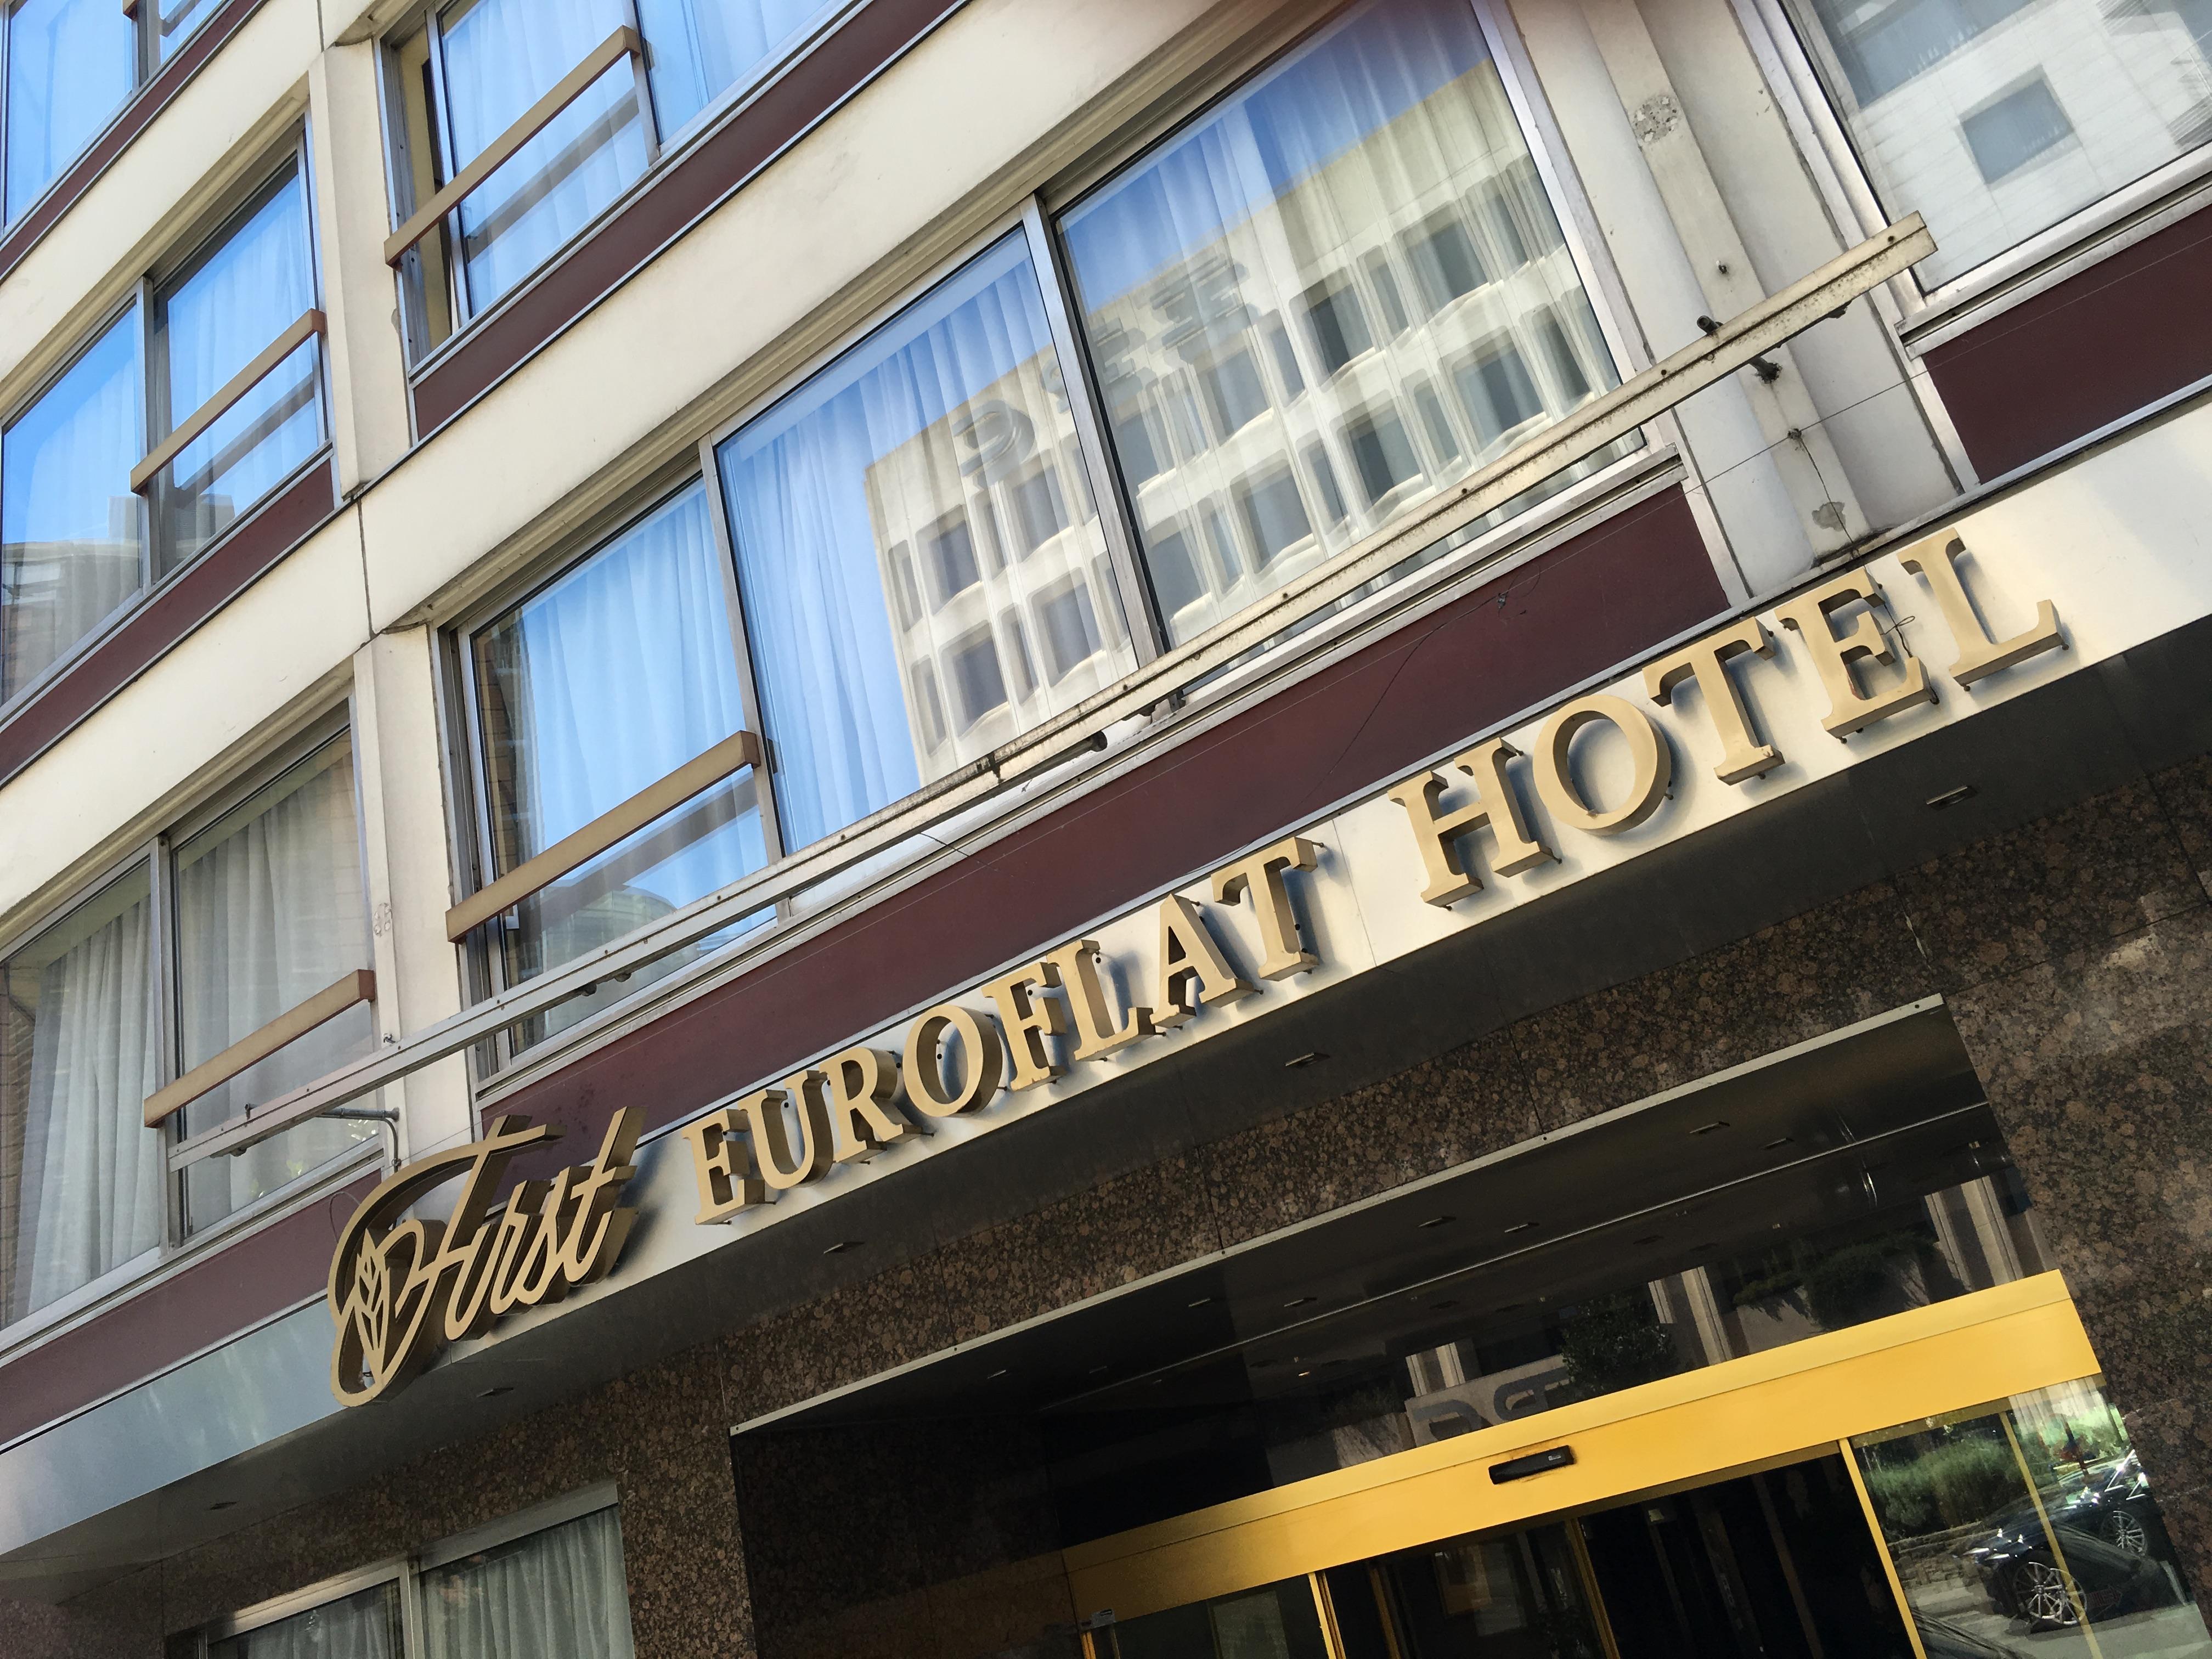 First Euroflat Hotel